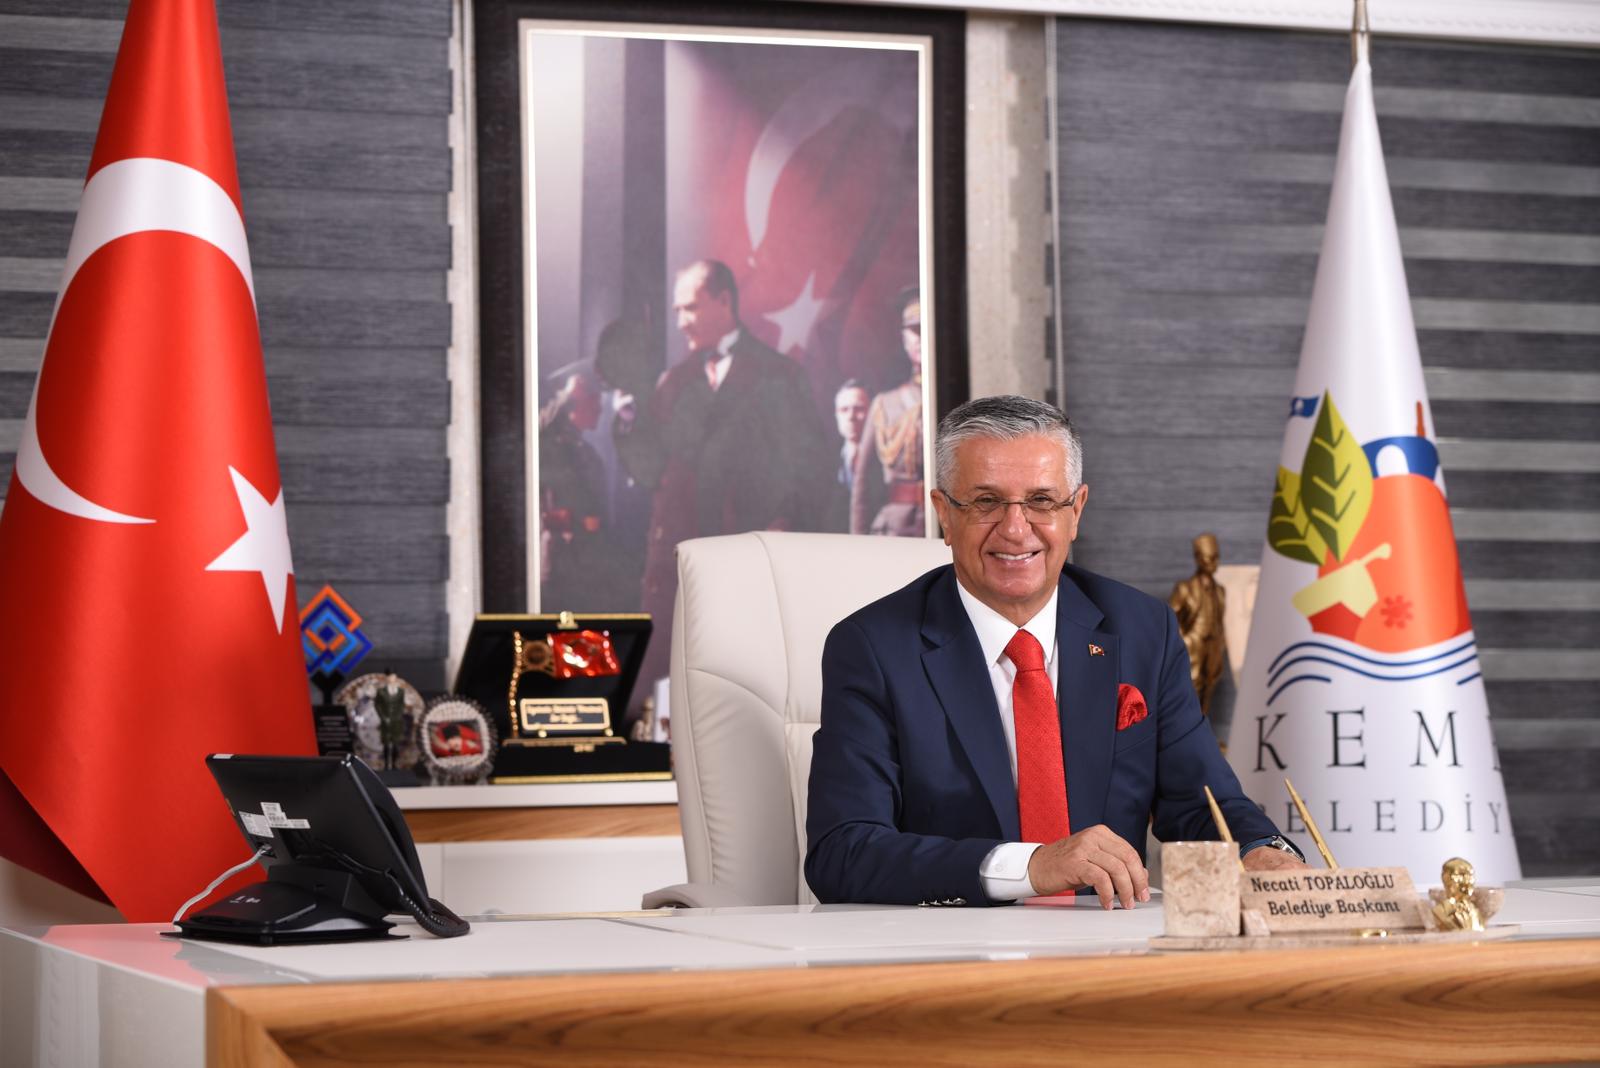 Kemer Belediye Başkanı Necati Topaloğlu